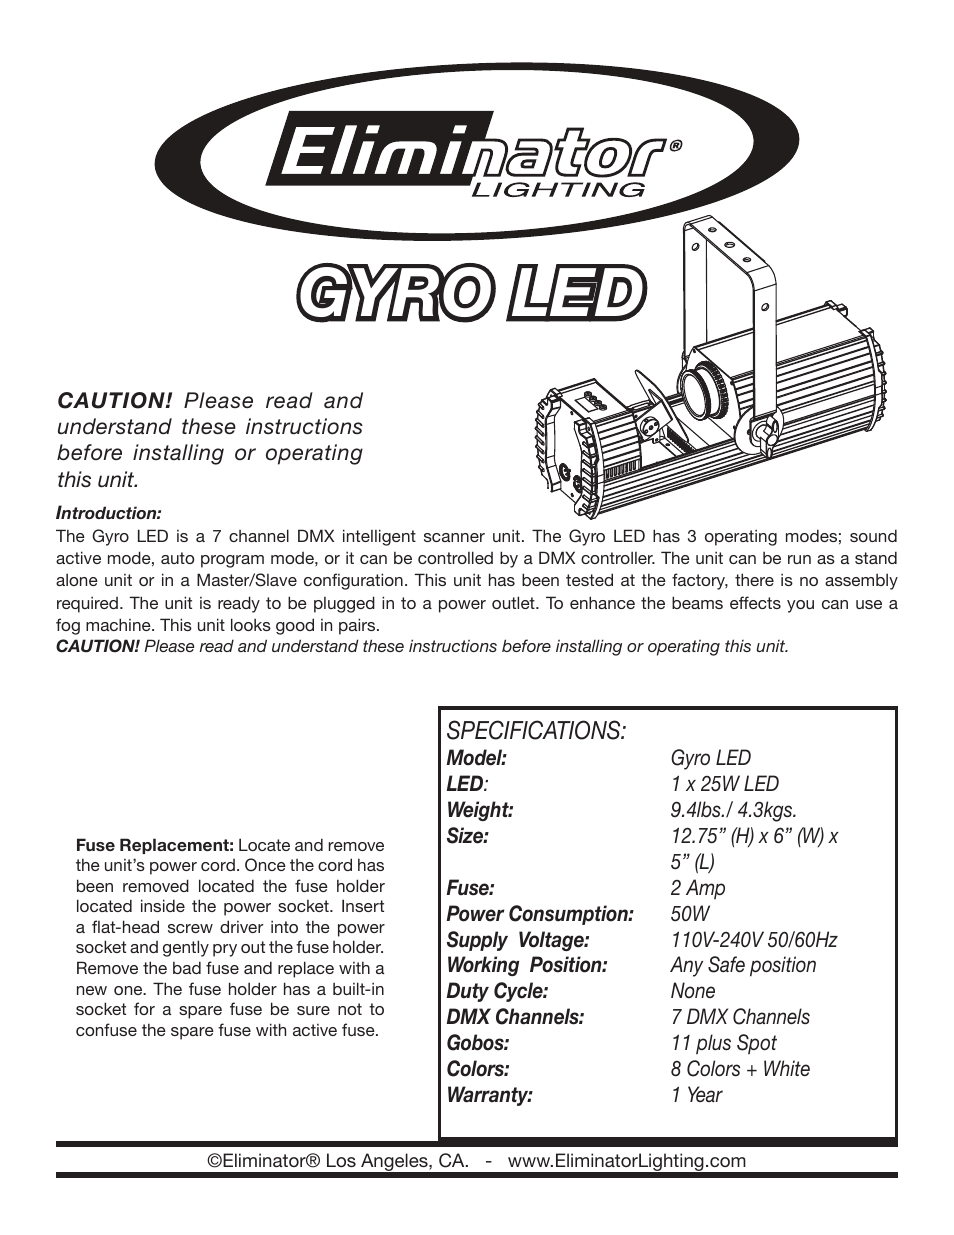 Gyro LED